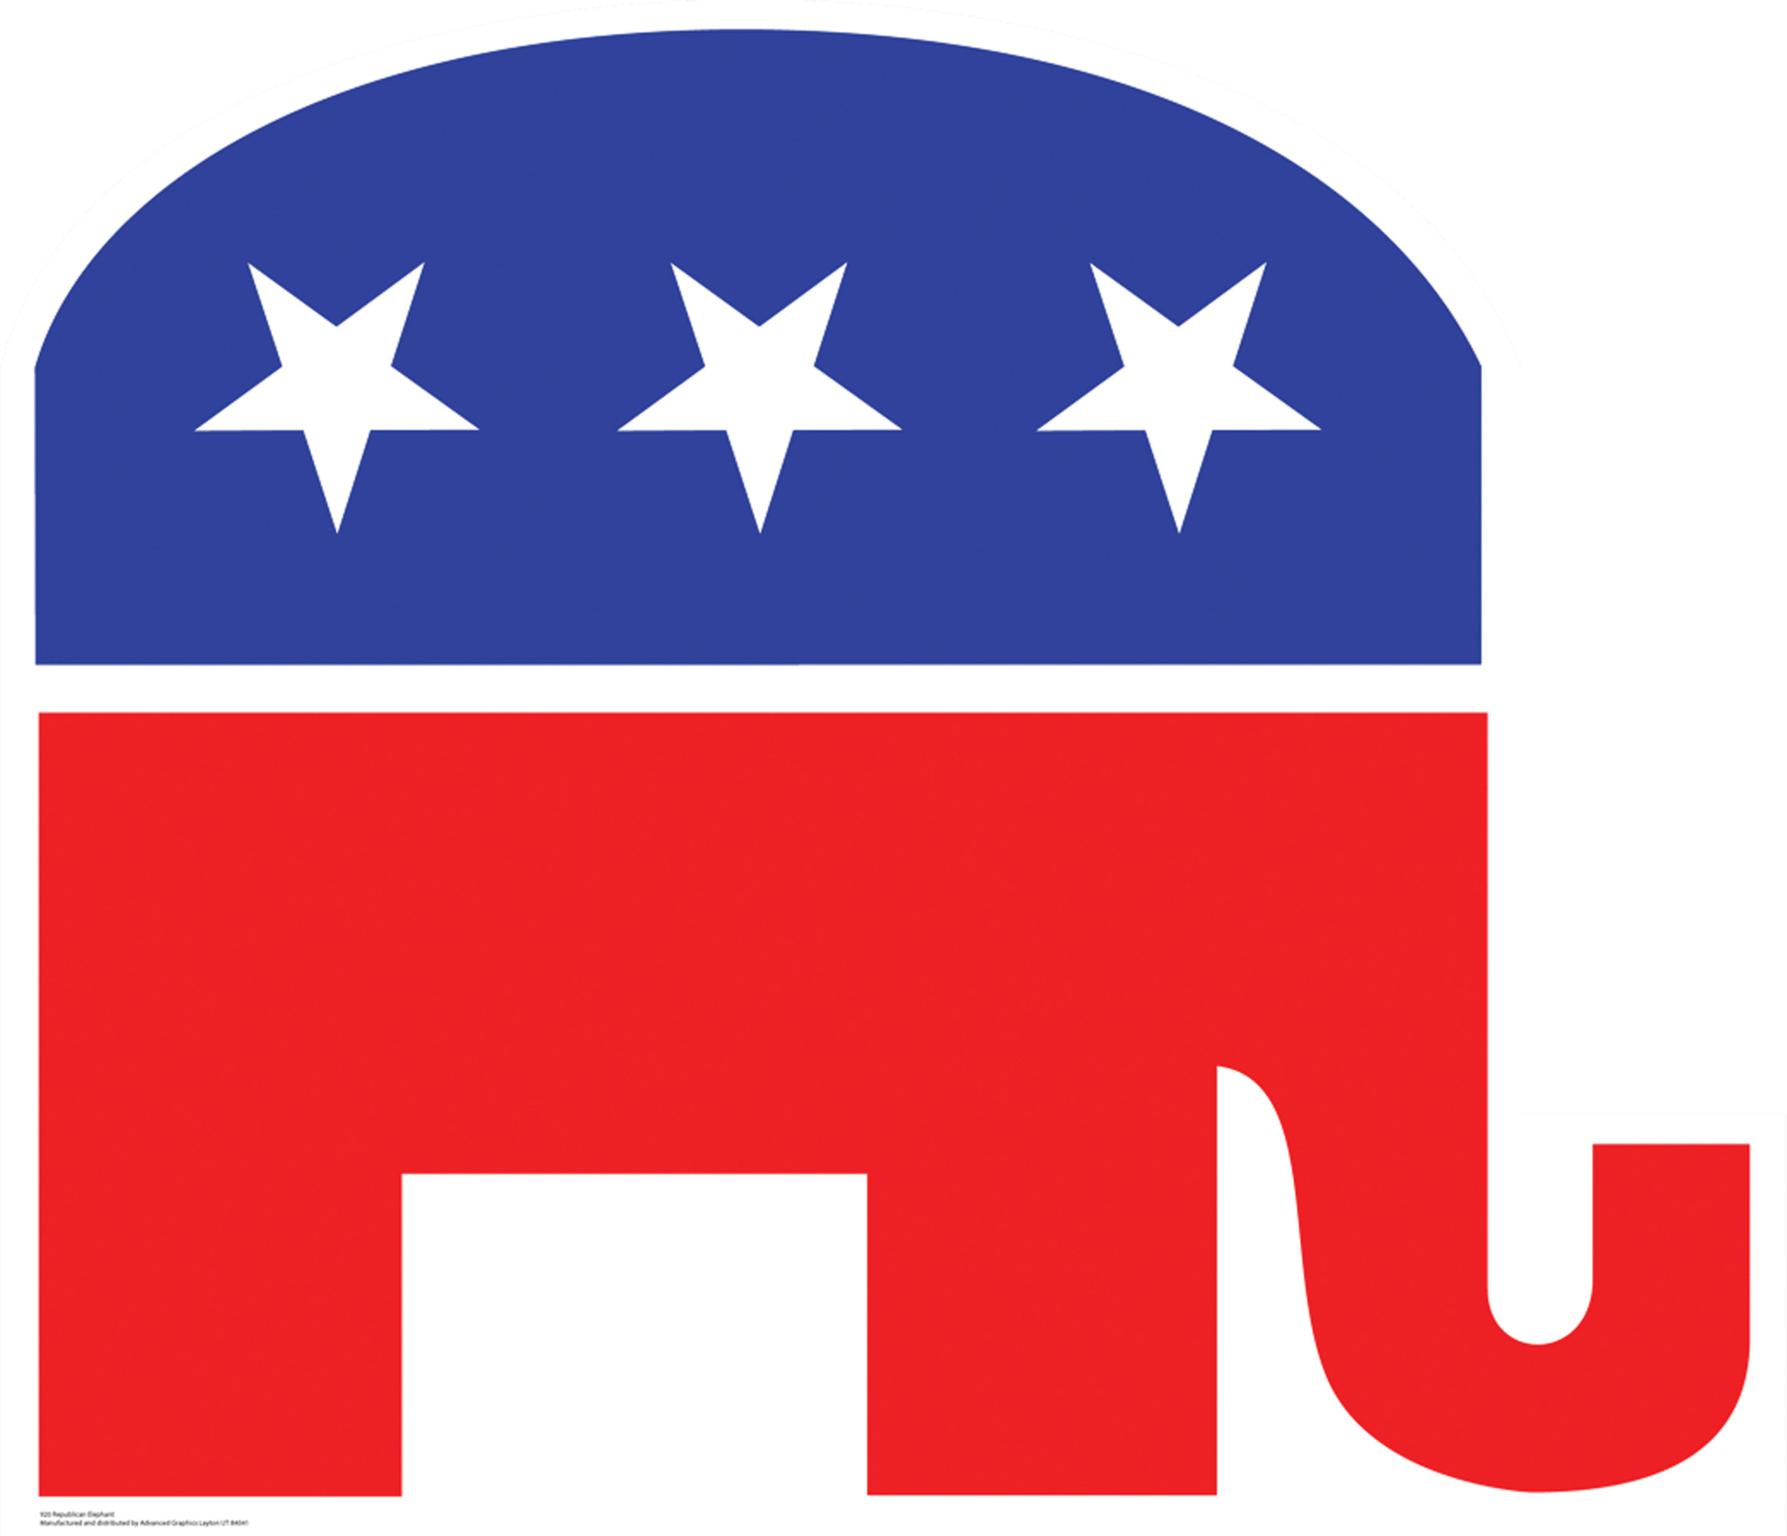 republican clipart - Republican Clipart